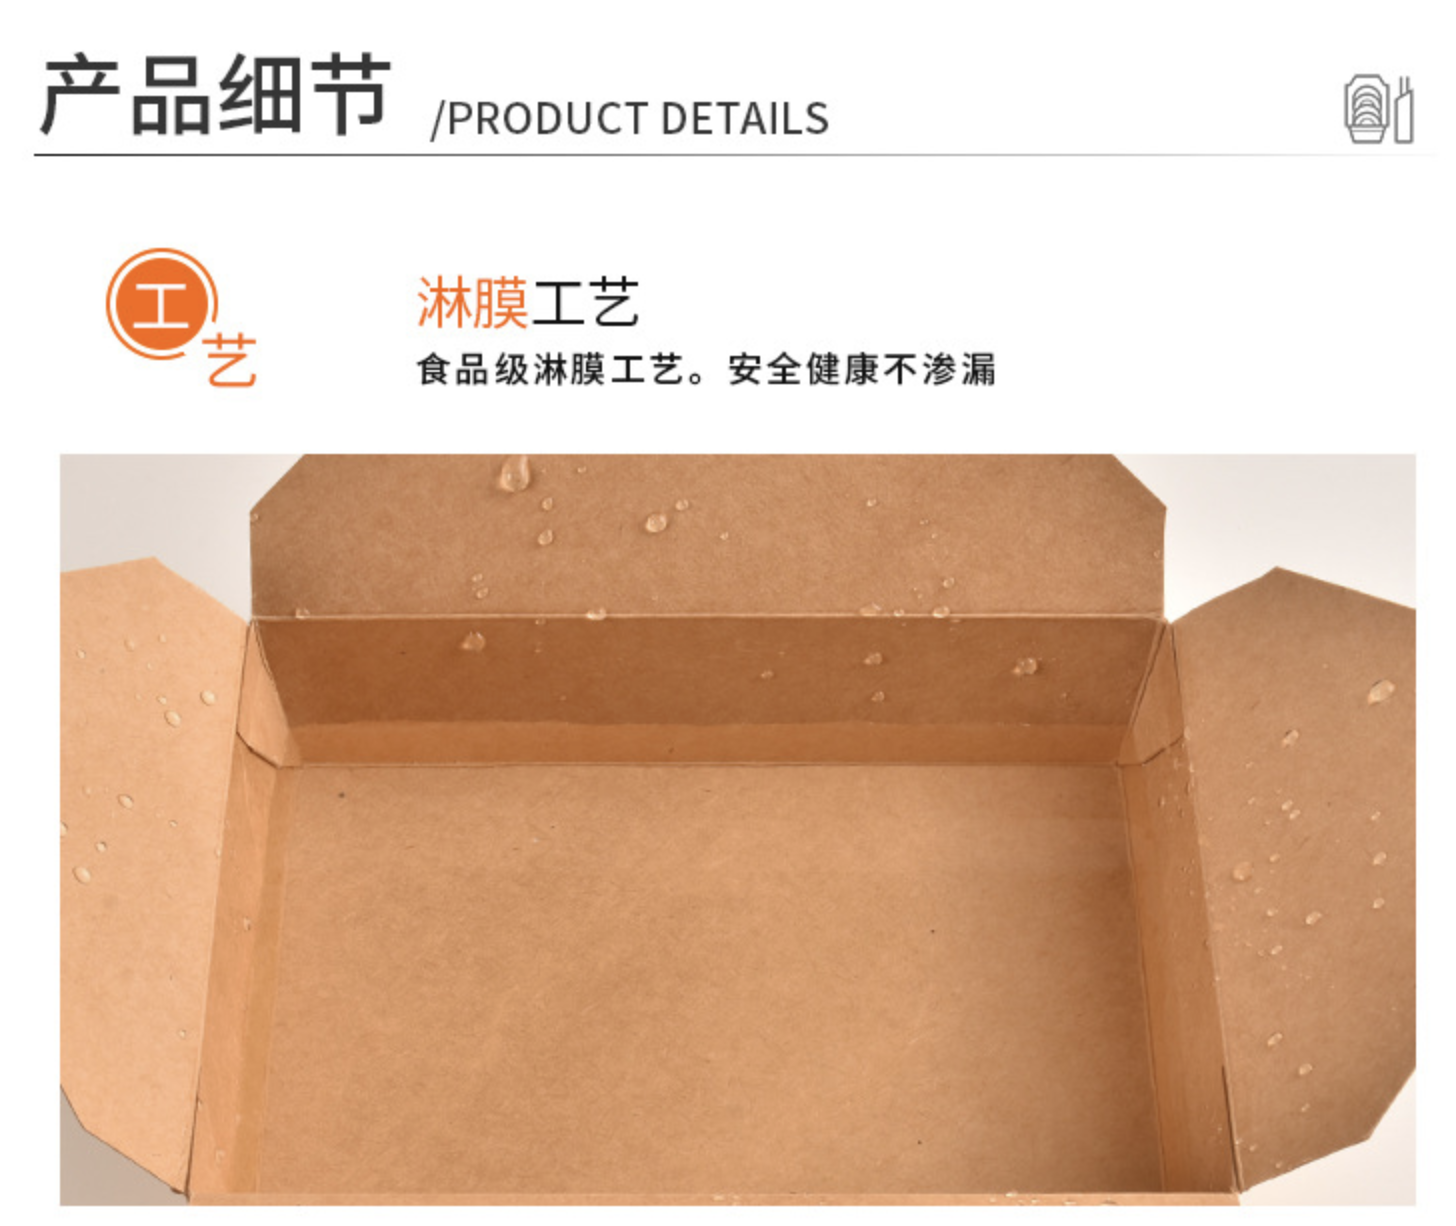 紙製餐盒(图7)